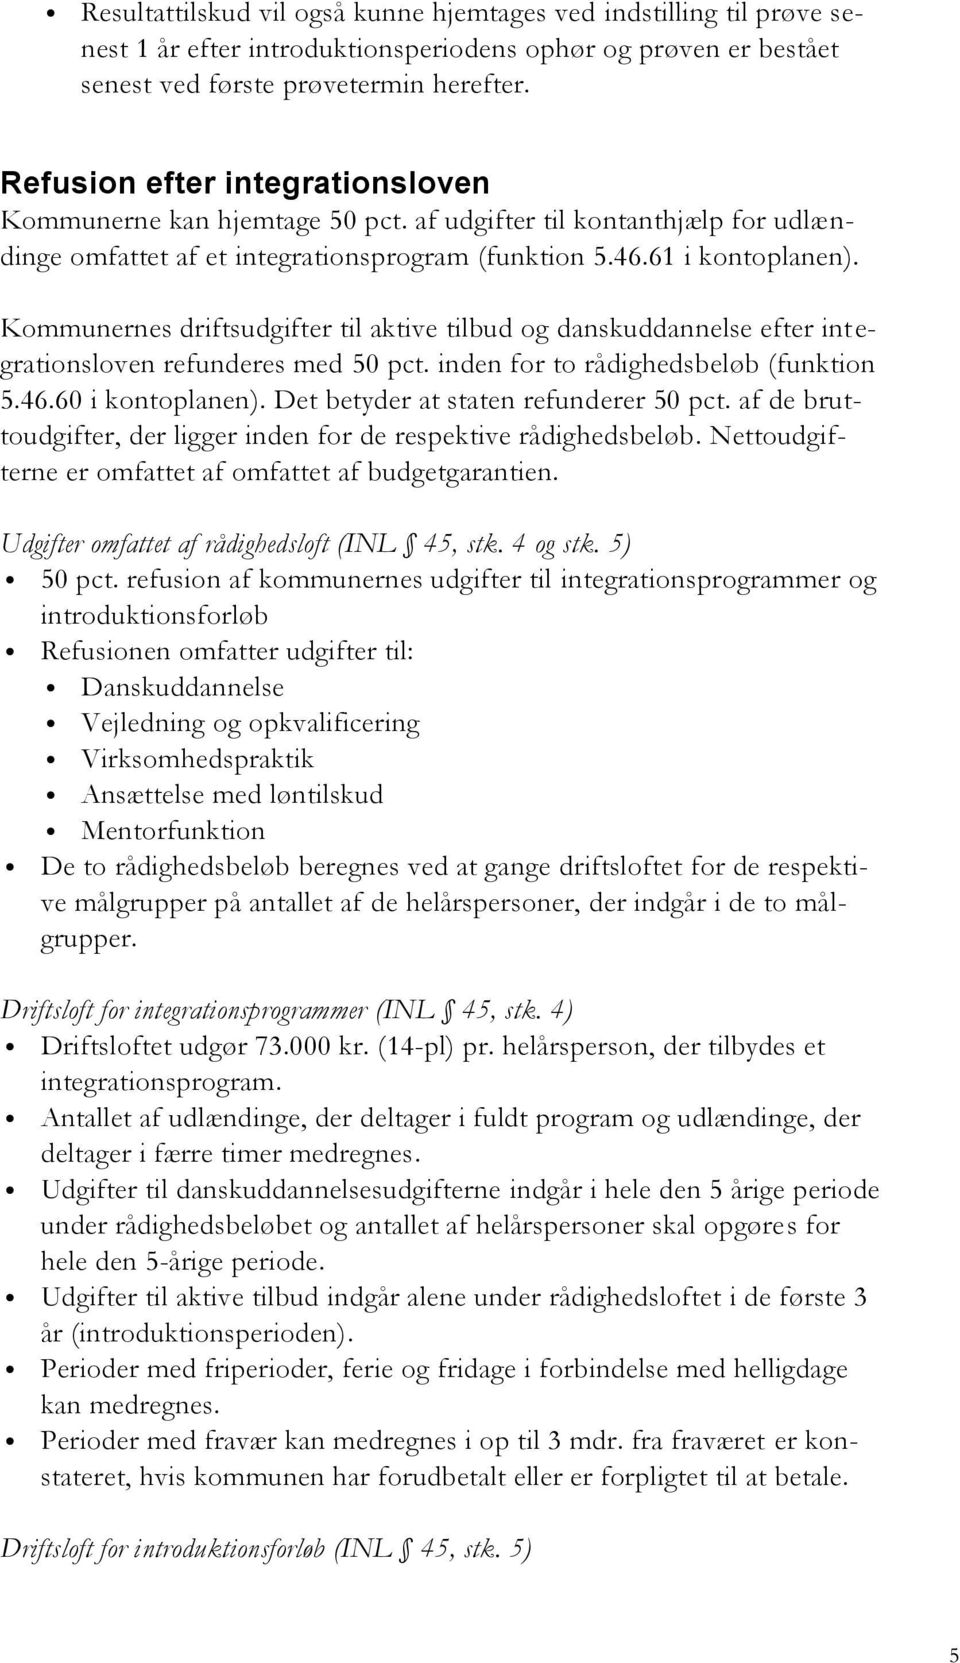 Kommunernes driftsudgifter til aktive tilbud og danskuddannelse efter integrationsloven refunderes med 50 pct. inden for to rådighedsbeløb (funktion 5.46.60 i kontoplanen).